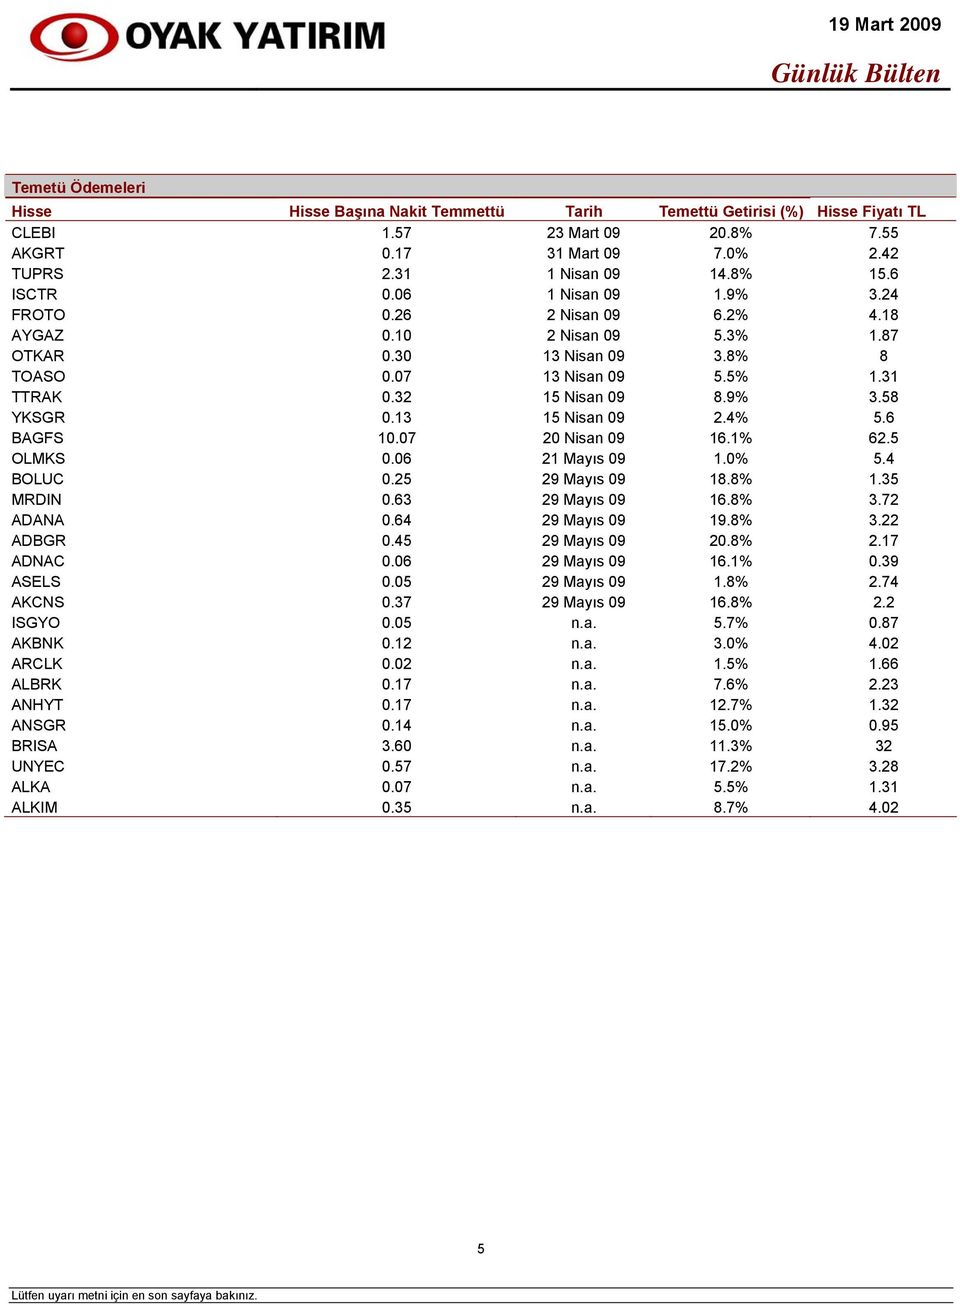 13 15 Nisan 09 2.4% 5.6 BAGFS 10.07 20 Nisan 09 16.1% 62.5 OLMKS 0.06 21 Mayıs 09 1.0% 5.4 BOLUC 0.25 29 Mayıs 09 18.8% 1.35 MRDIN 0.63 29 Mayıs 09 16.8% 3.72 ADANA 0.64 29 Mayıs 09 19.8% 3.22 ADBGR 0.